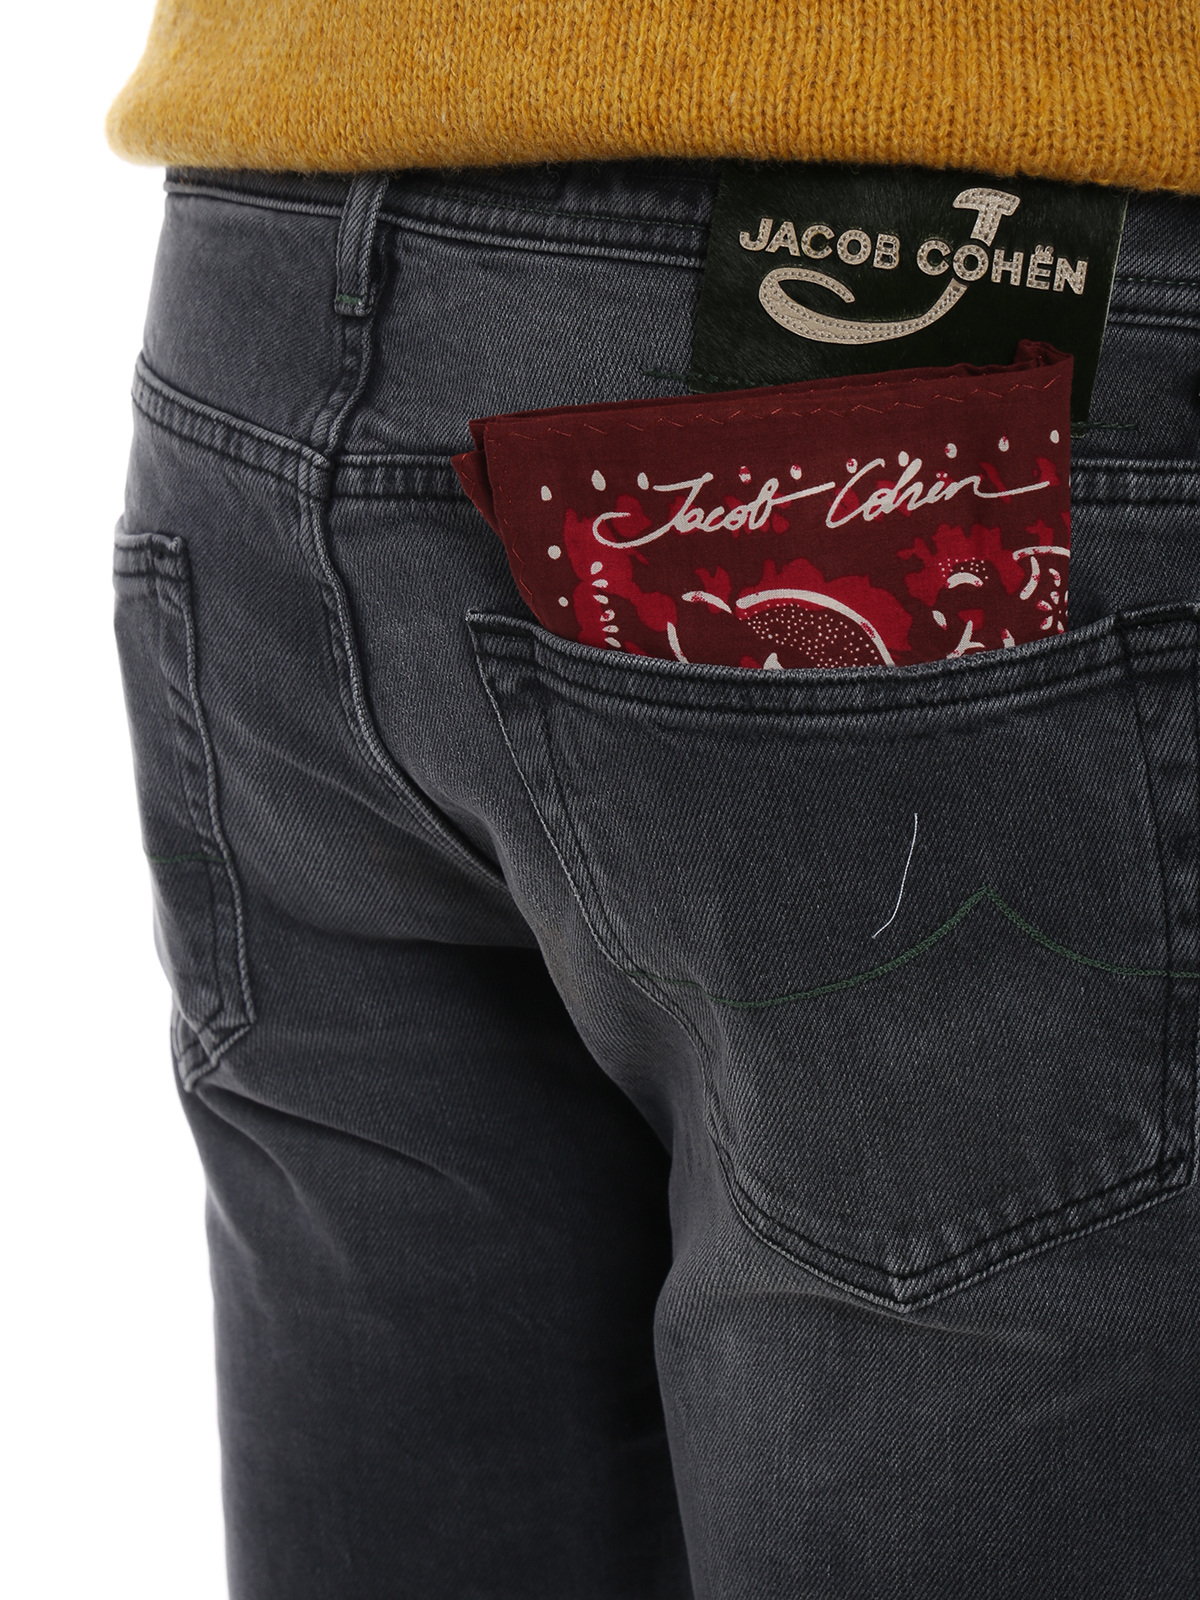 Verdraaiing Verrijking jukbeen Straight leg jeans Jacob Cohen - Style 688 comfort green detail jeans -  J688COMF01136W4